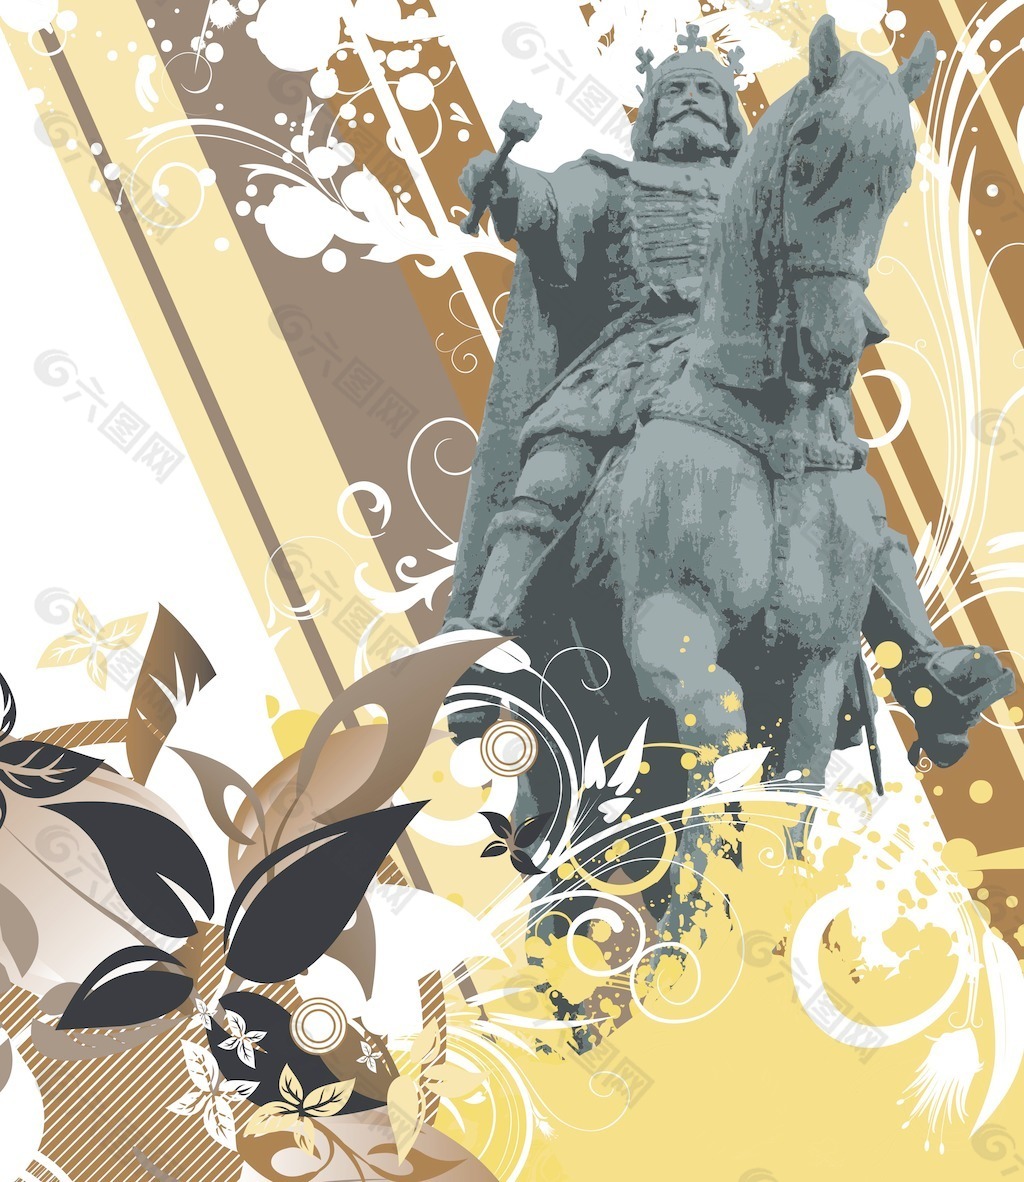 骑士雕像与花卉背景